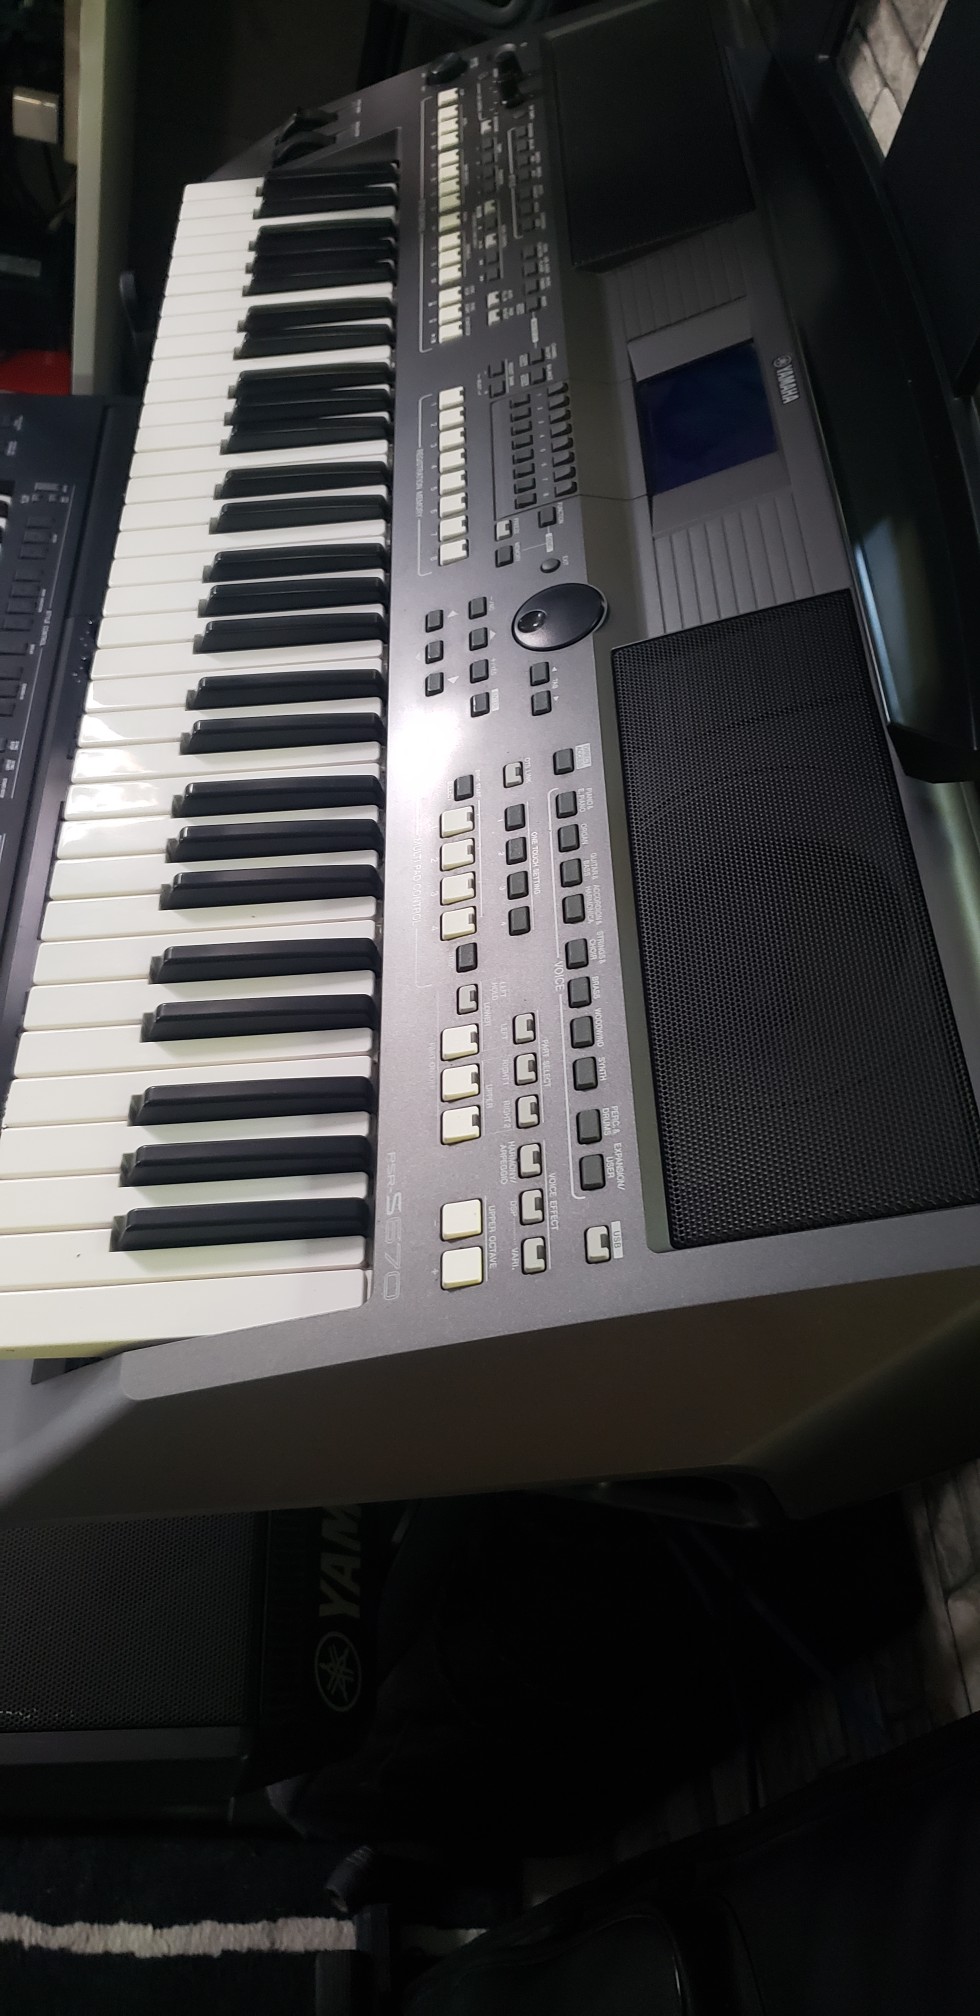 instrumentos musicales - PIANO YAMAHA PSR-S670 2020.